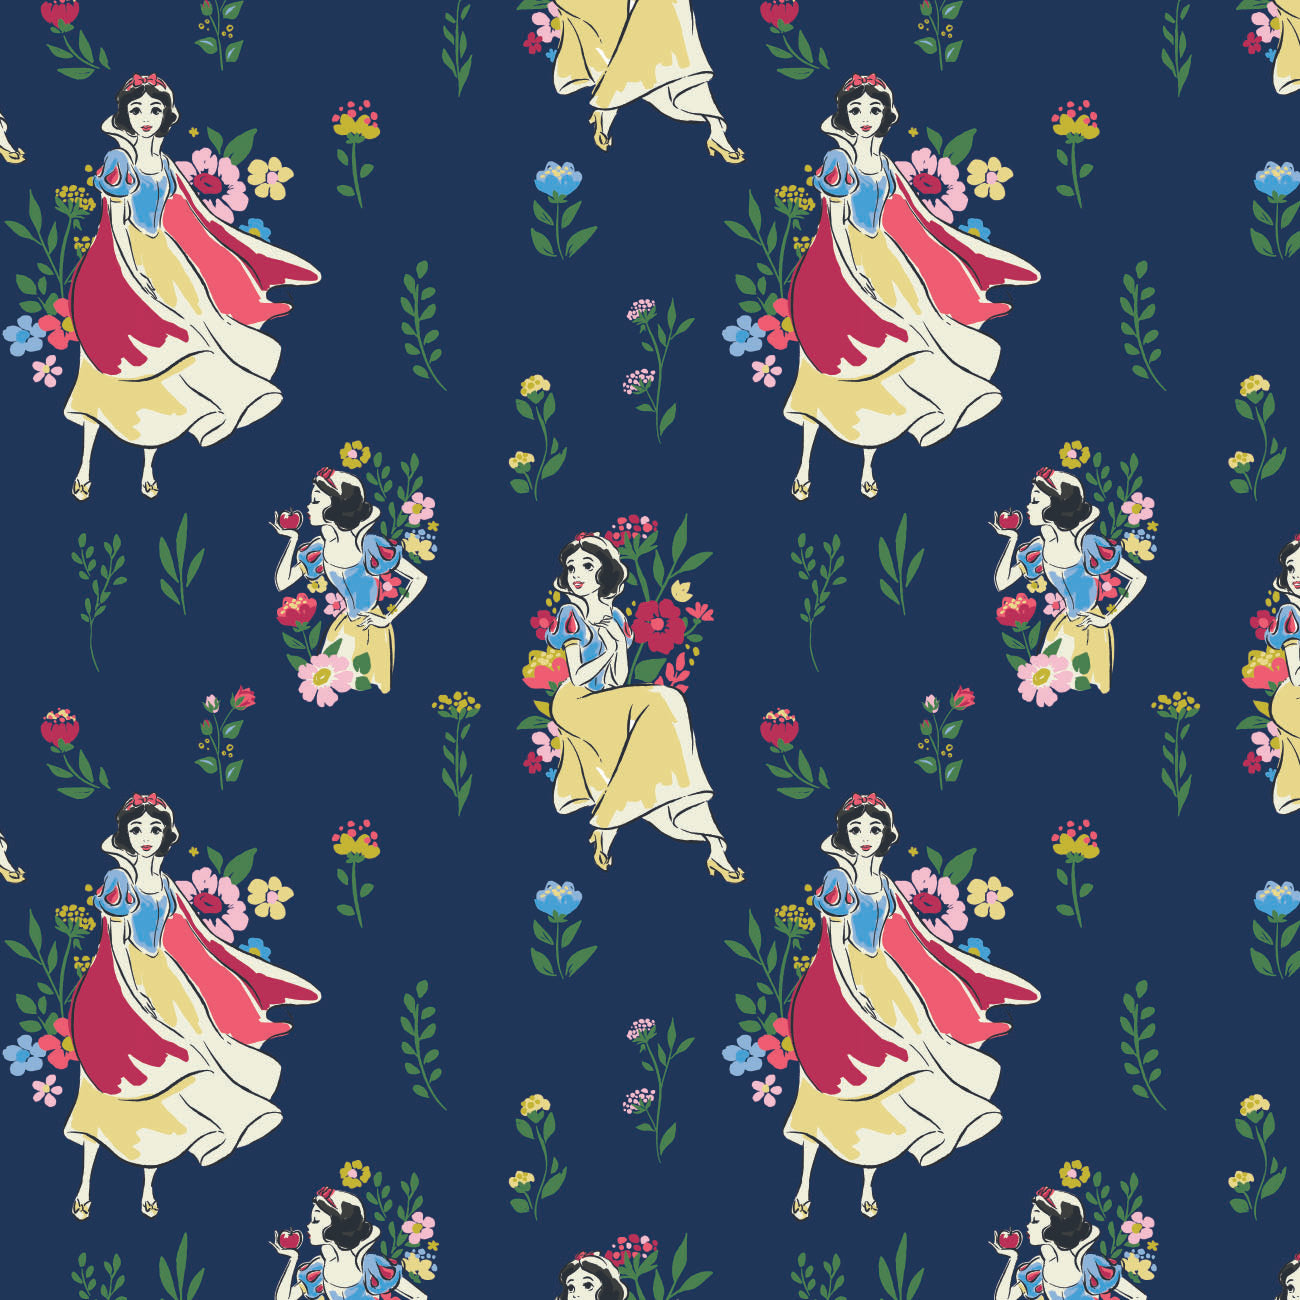 Disney Snow White Collection - 2 Yard Cotton Cut - Snow White Meadow - Cotton